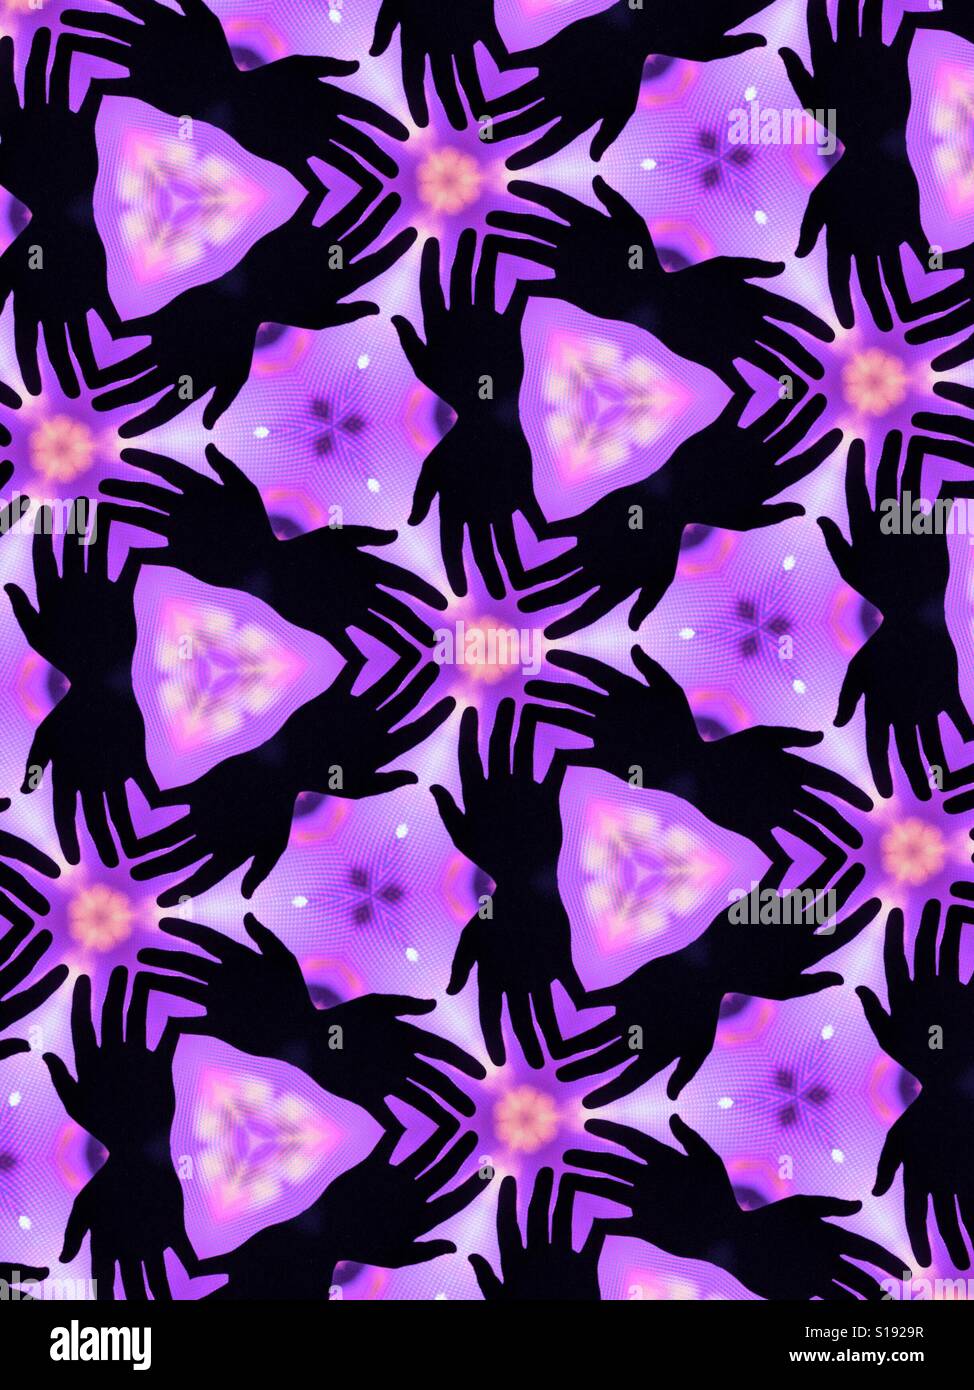 Ein abstraktes kaleidoskopartigen Bild von Silhouette ausgestreckten Händen vor einem lila Hintergrund Stockfoto